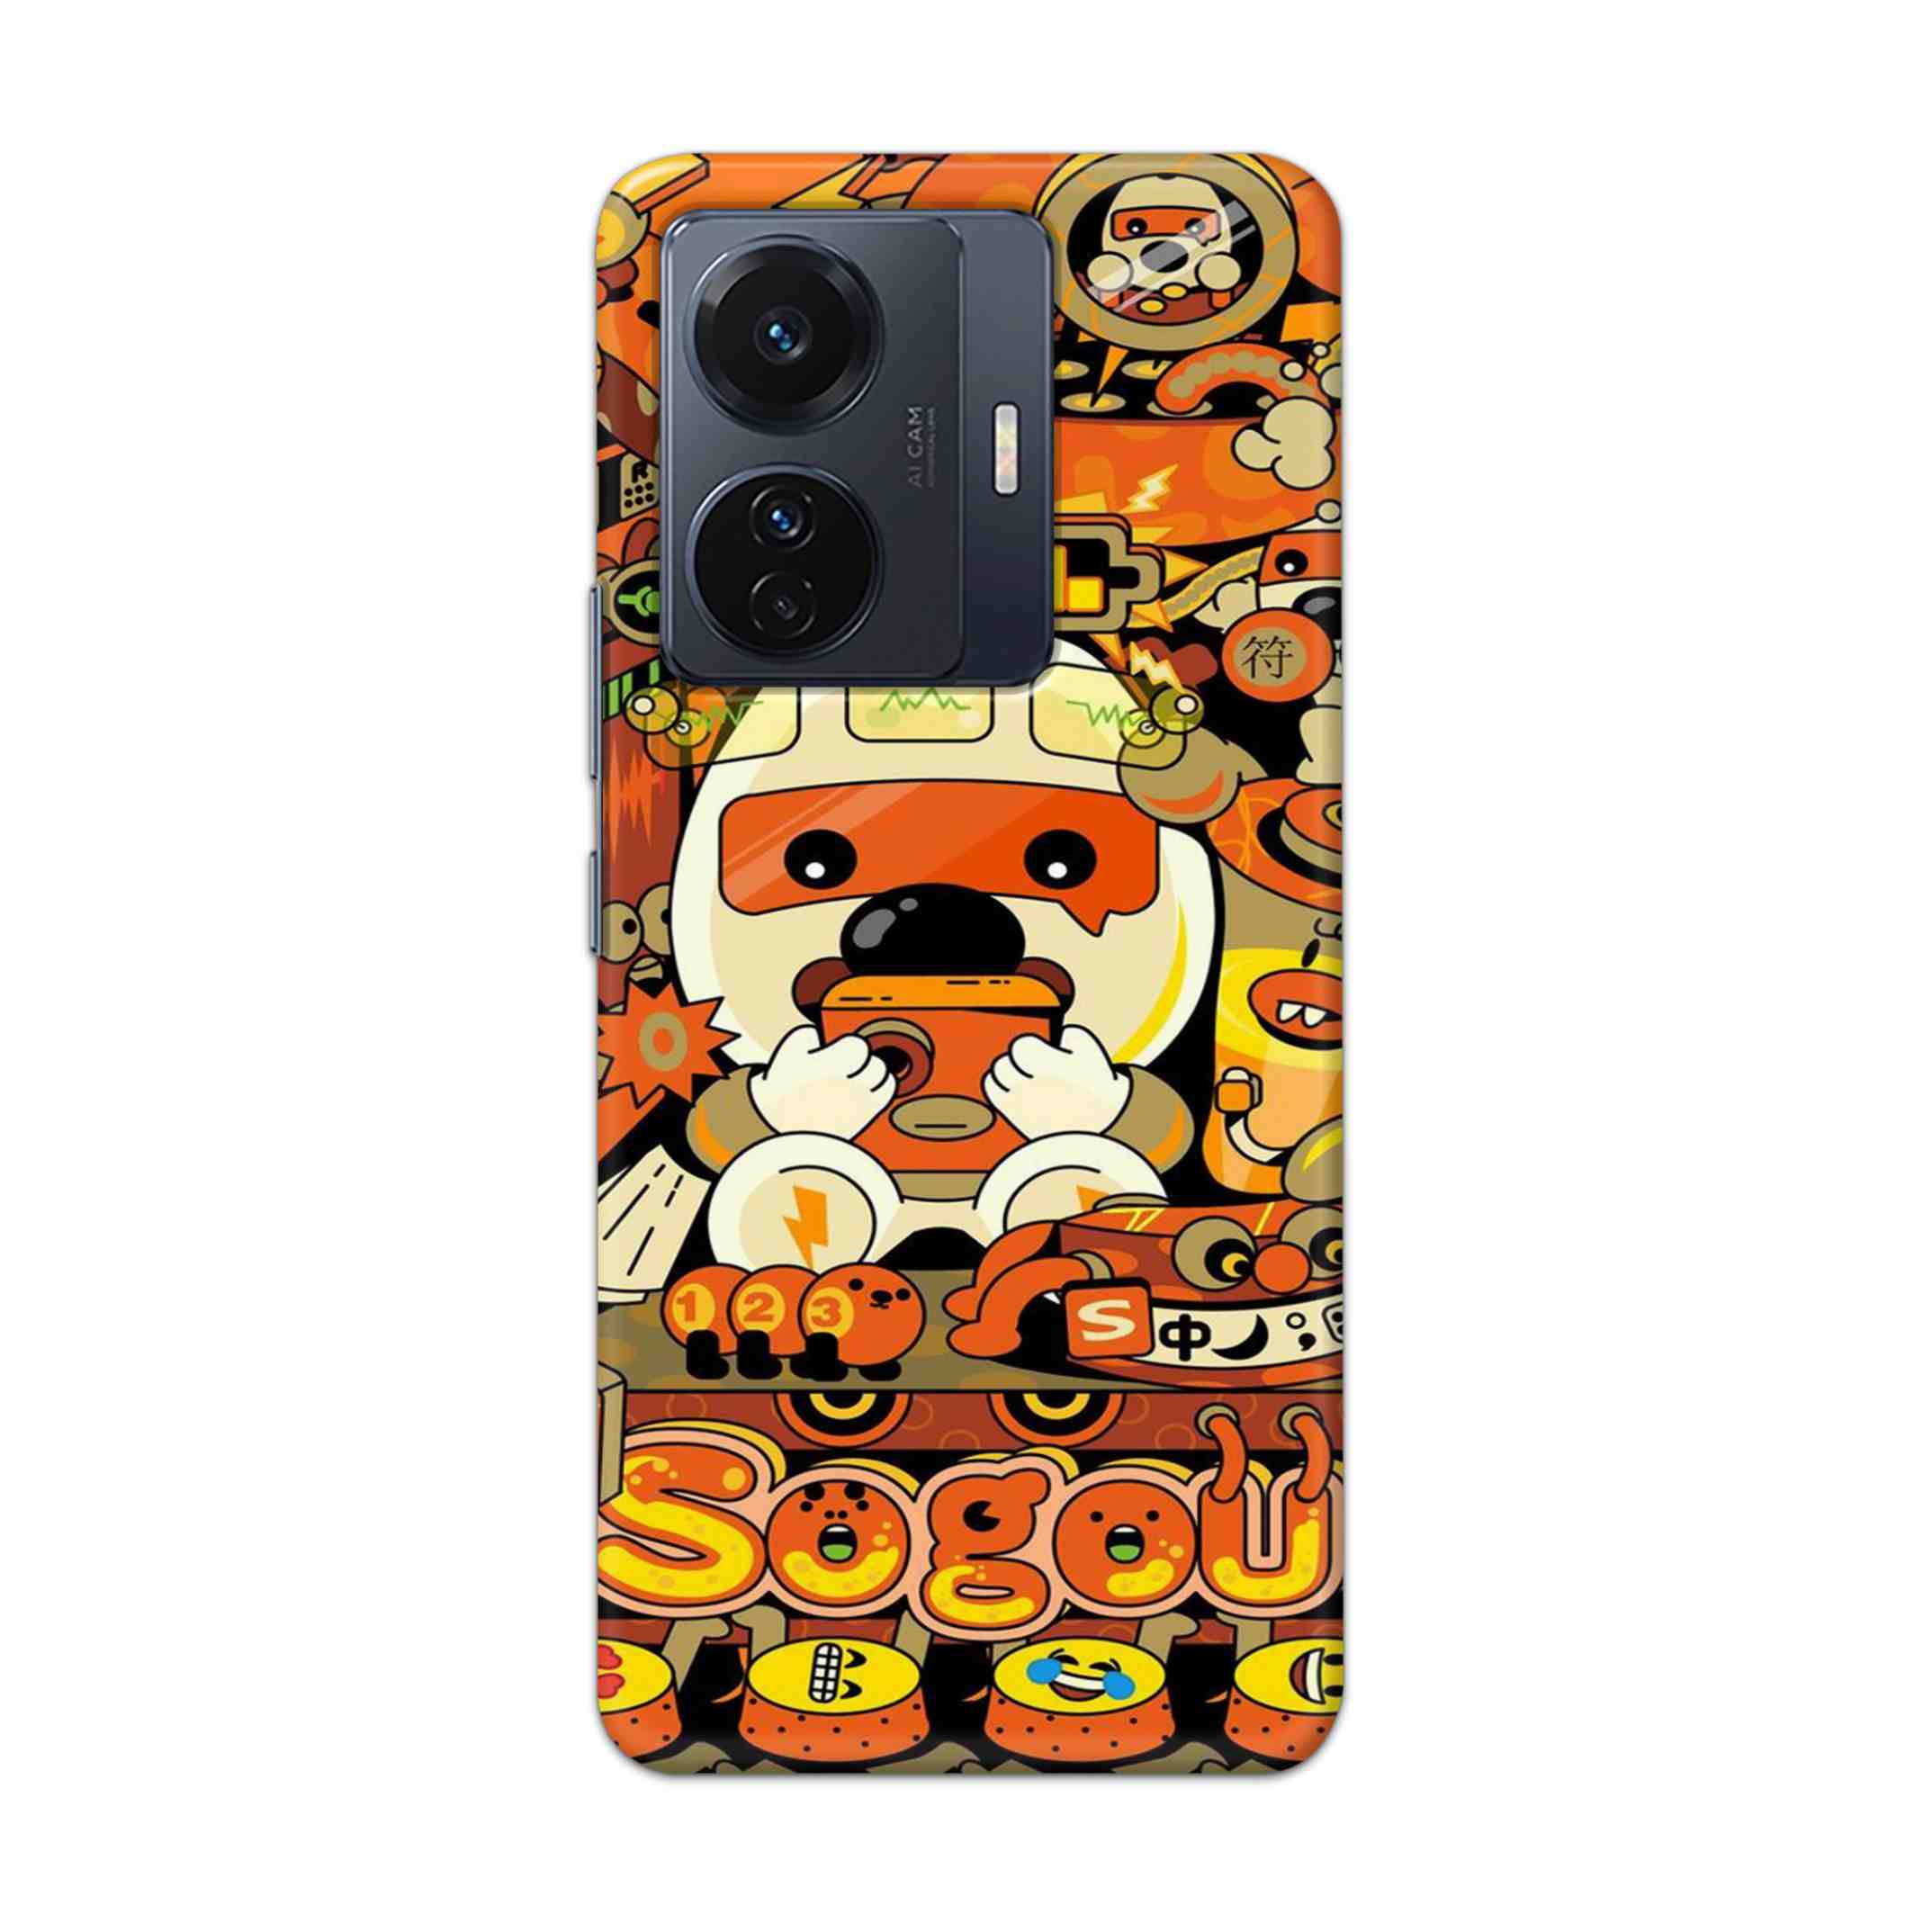 Buy Sogou Hard Back Mobile Phone Case Cover For Vivo T1 Pro 5G Online